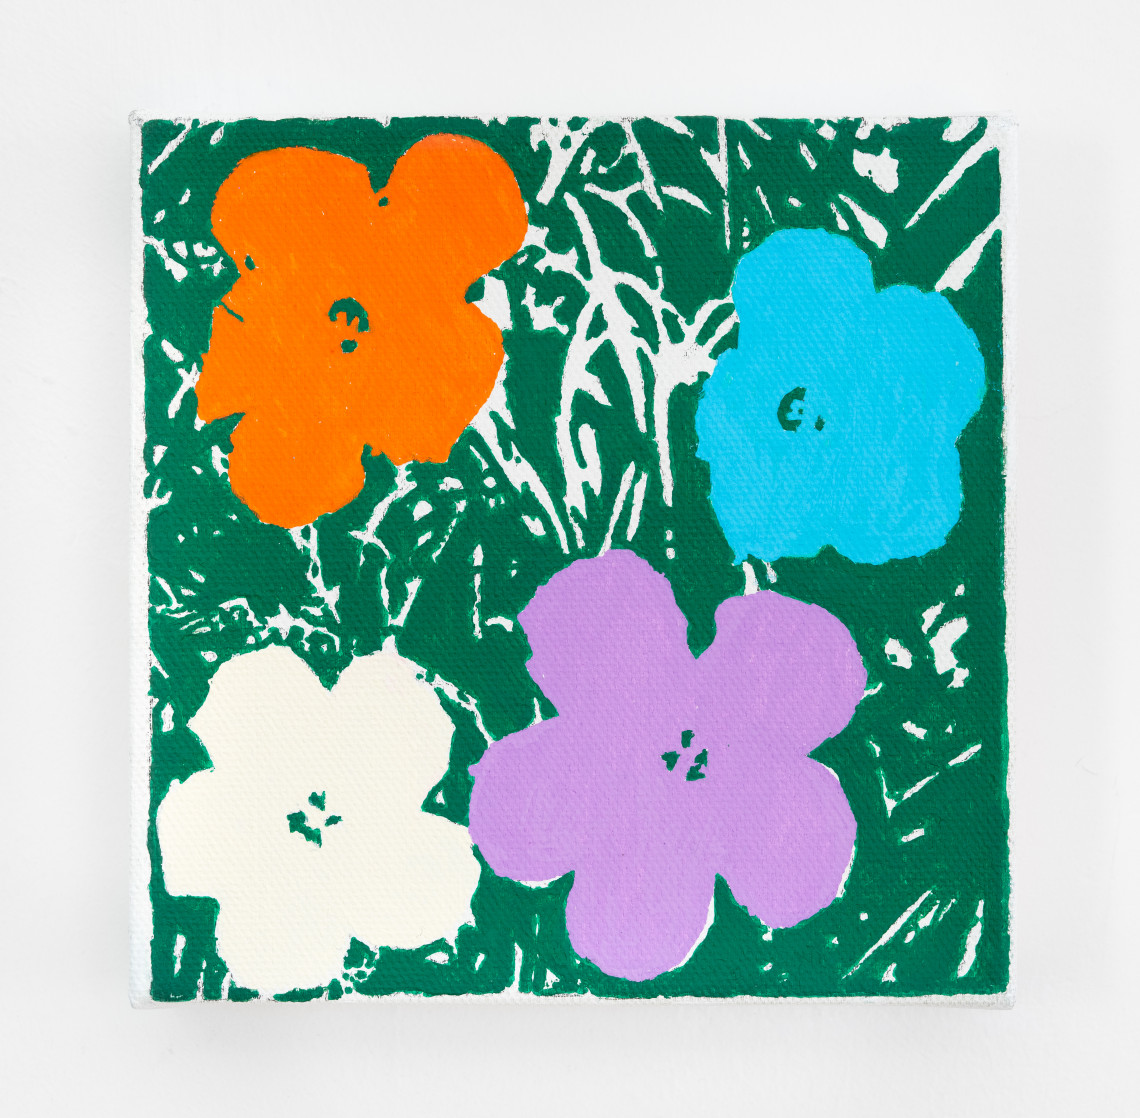  - Richard Pettibone Andy Warhol Flowers 1964 1970